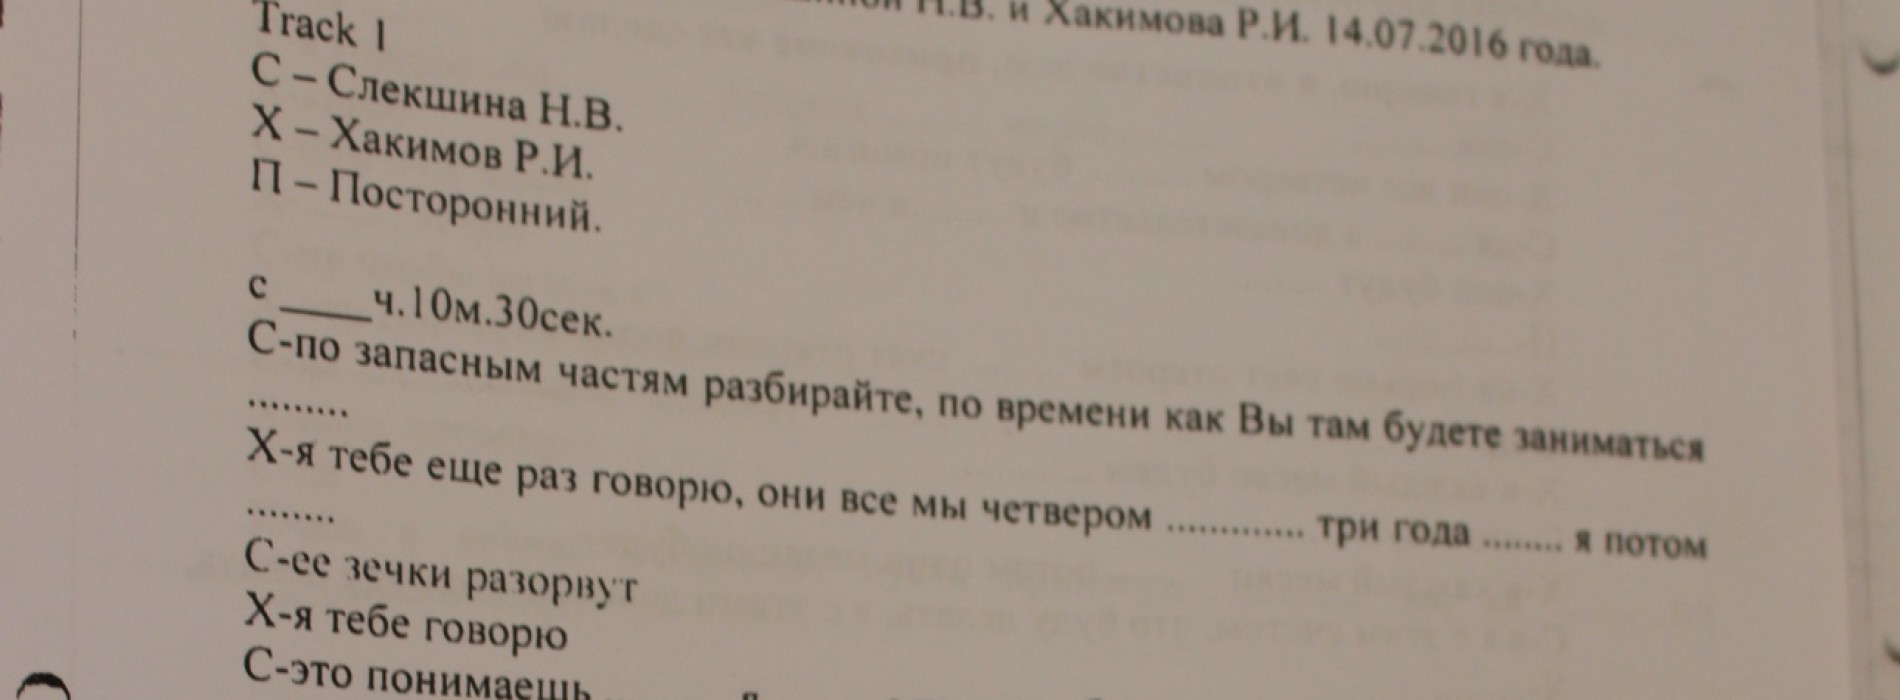 Журналисты получили распечатку разговора Слекишиной и Хакимова